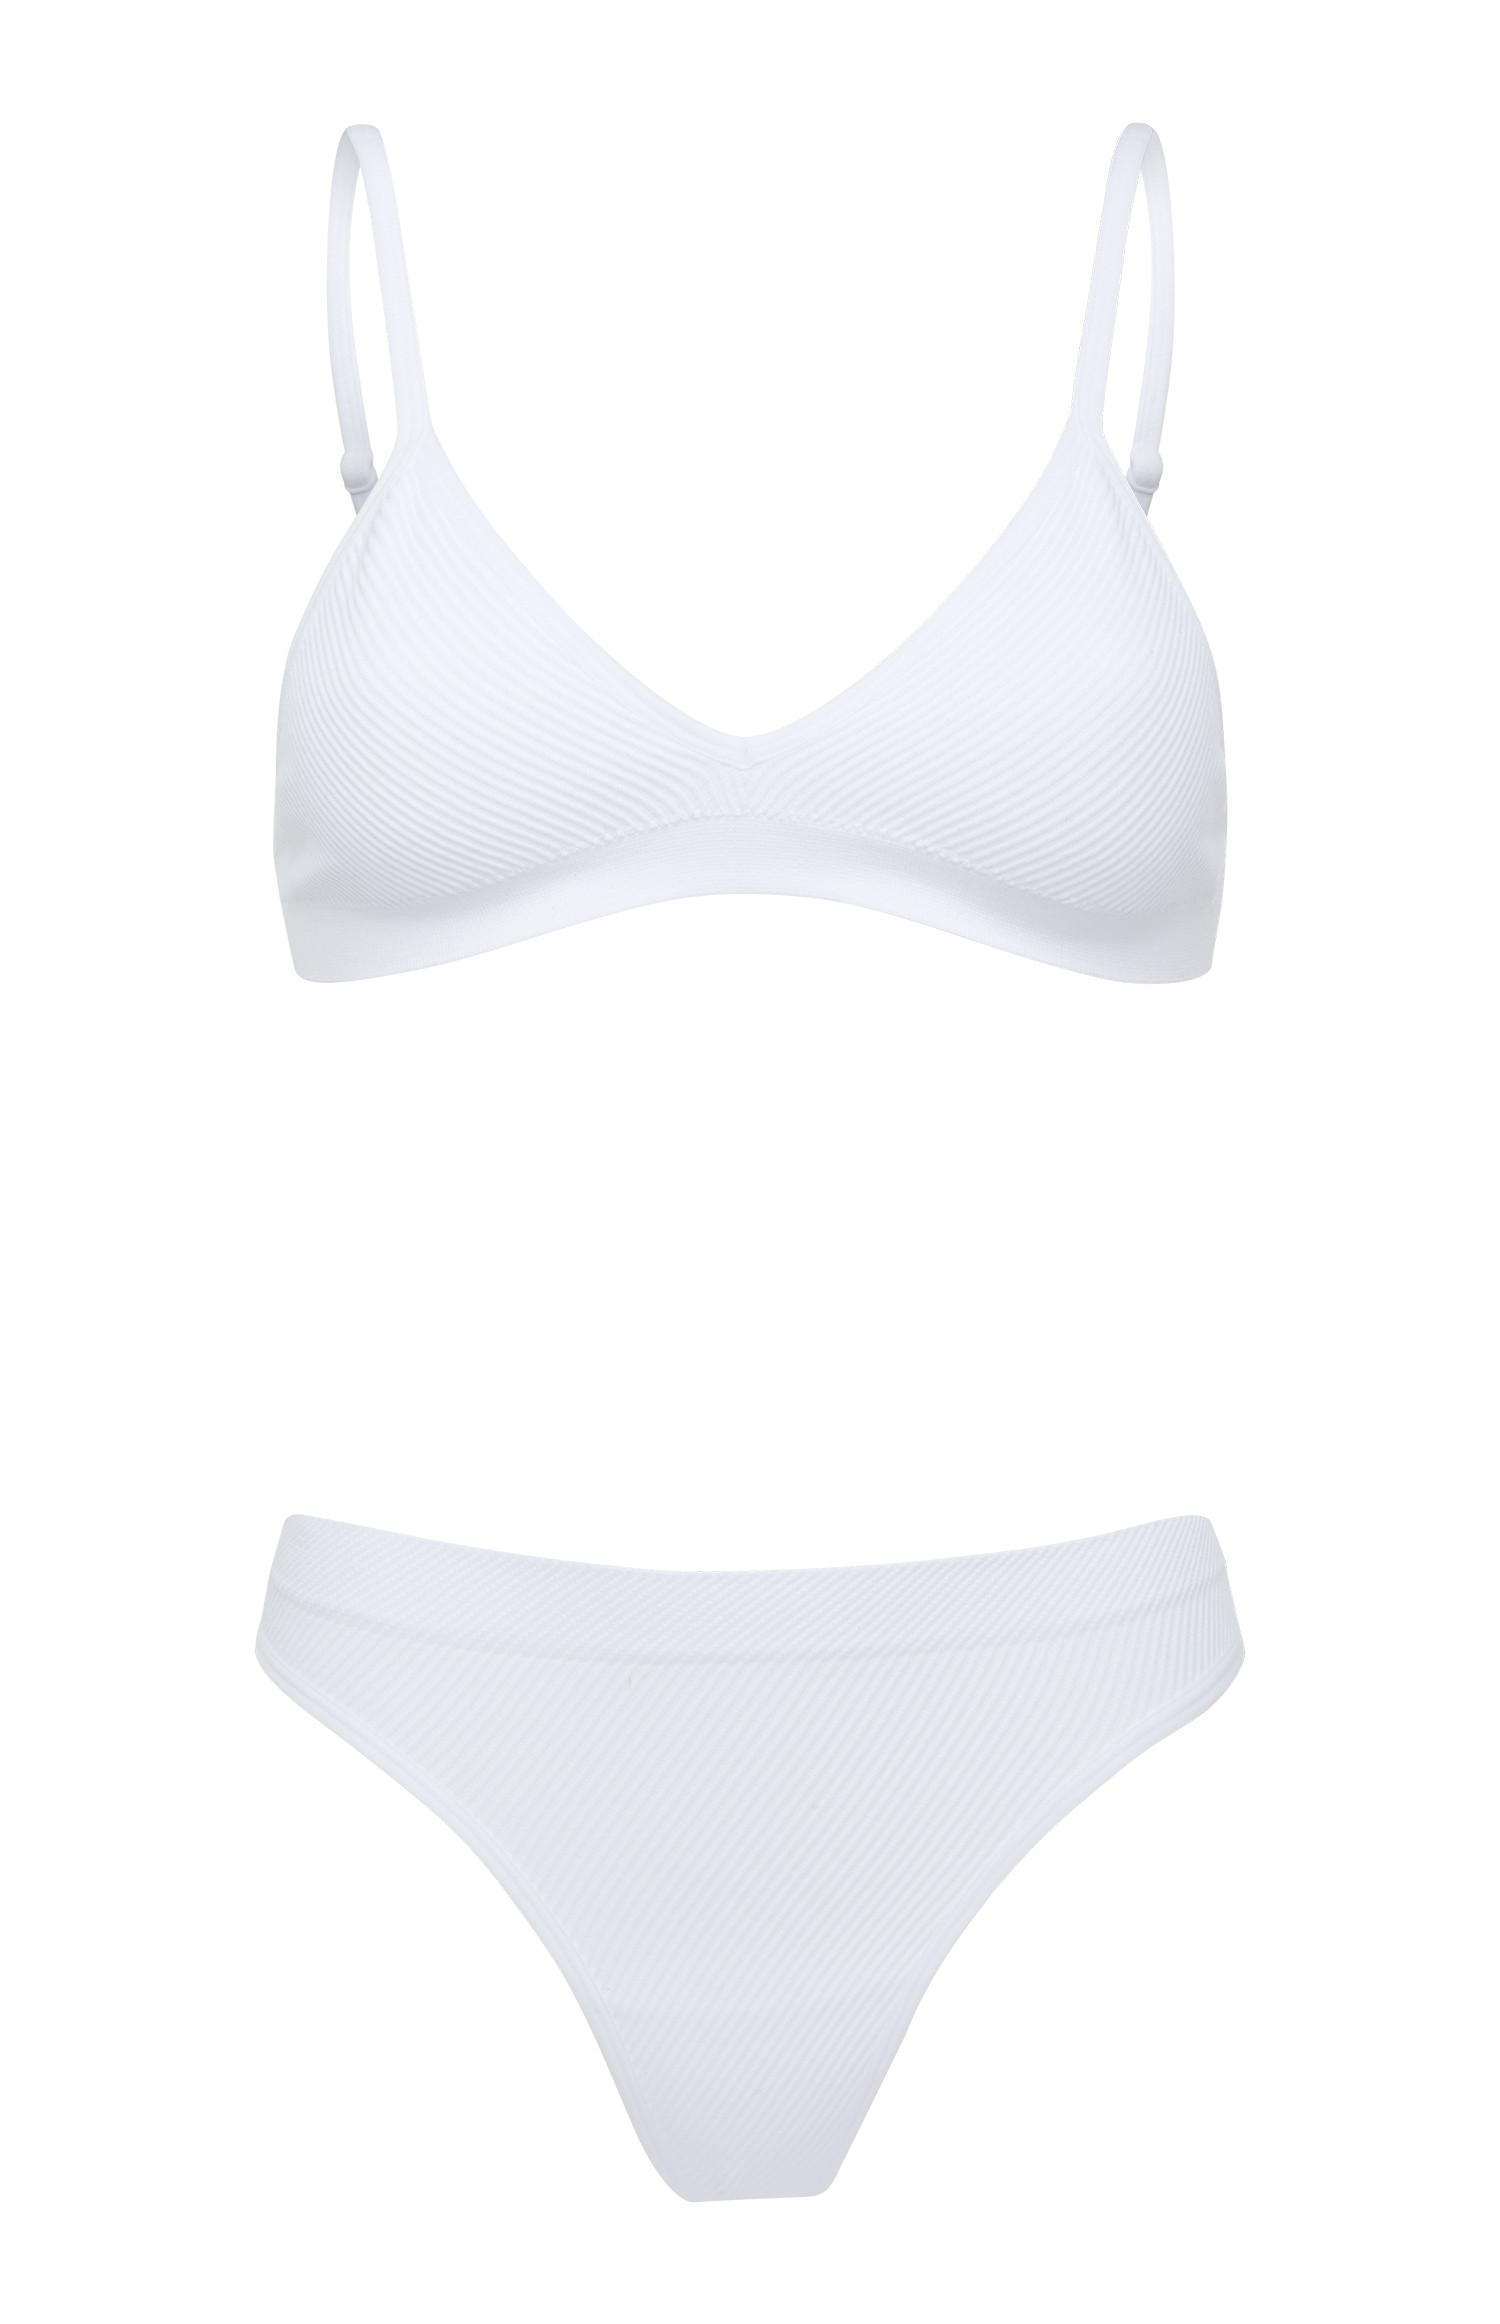 White Seam Free Bra and Briefs Set | Lingerie & Underwear Sets ...